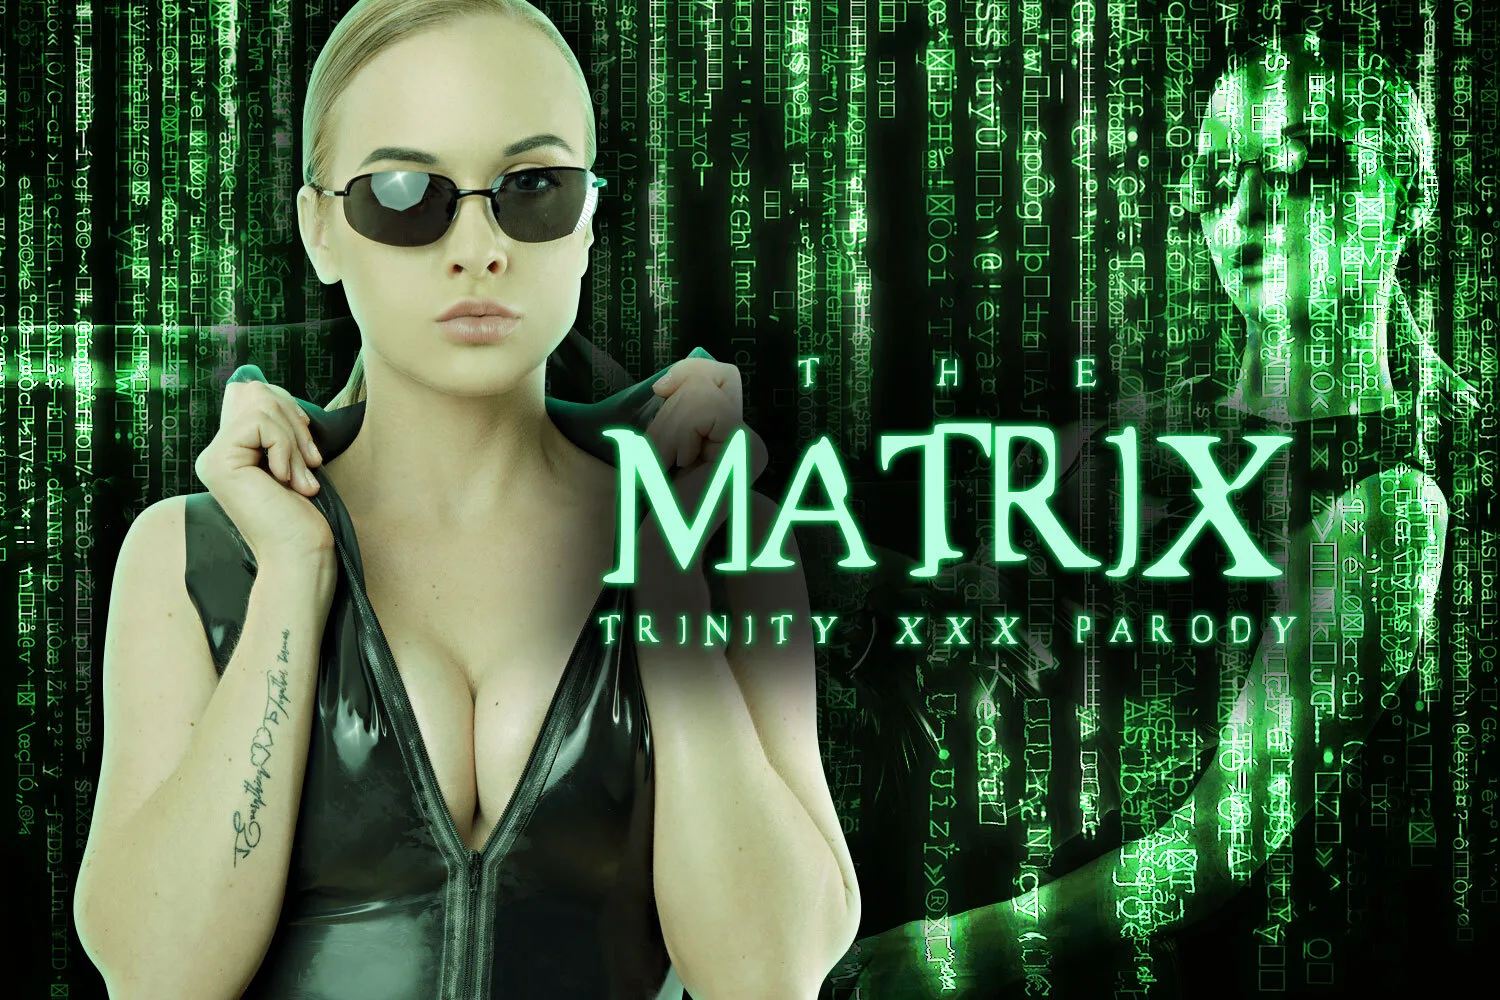 [2020-06-12] The Matrix: Trinity A XXX Parody - VRCosplayX